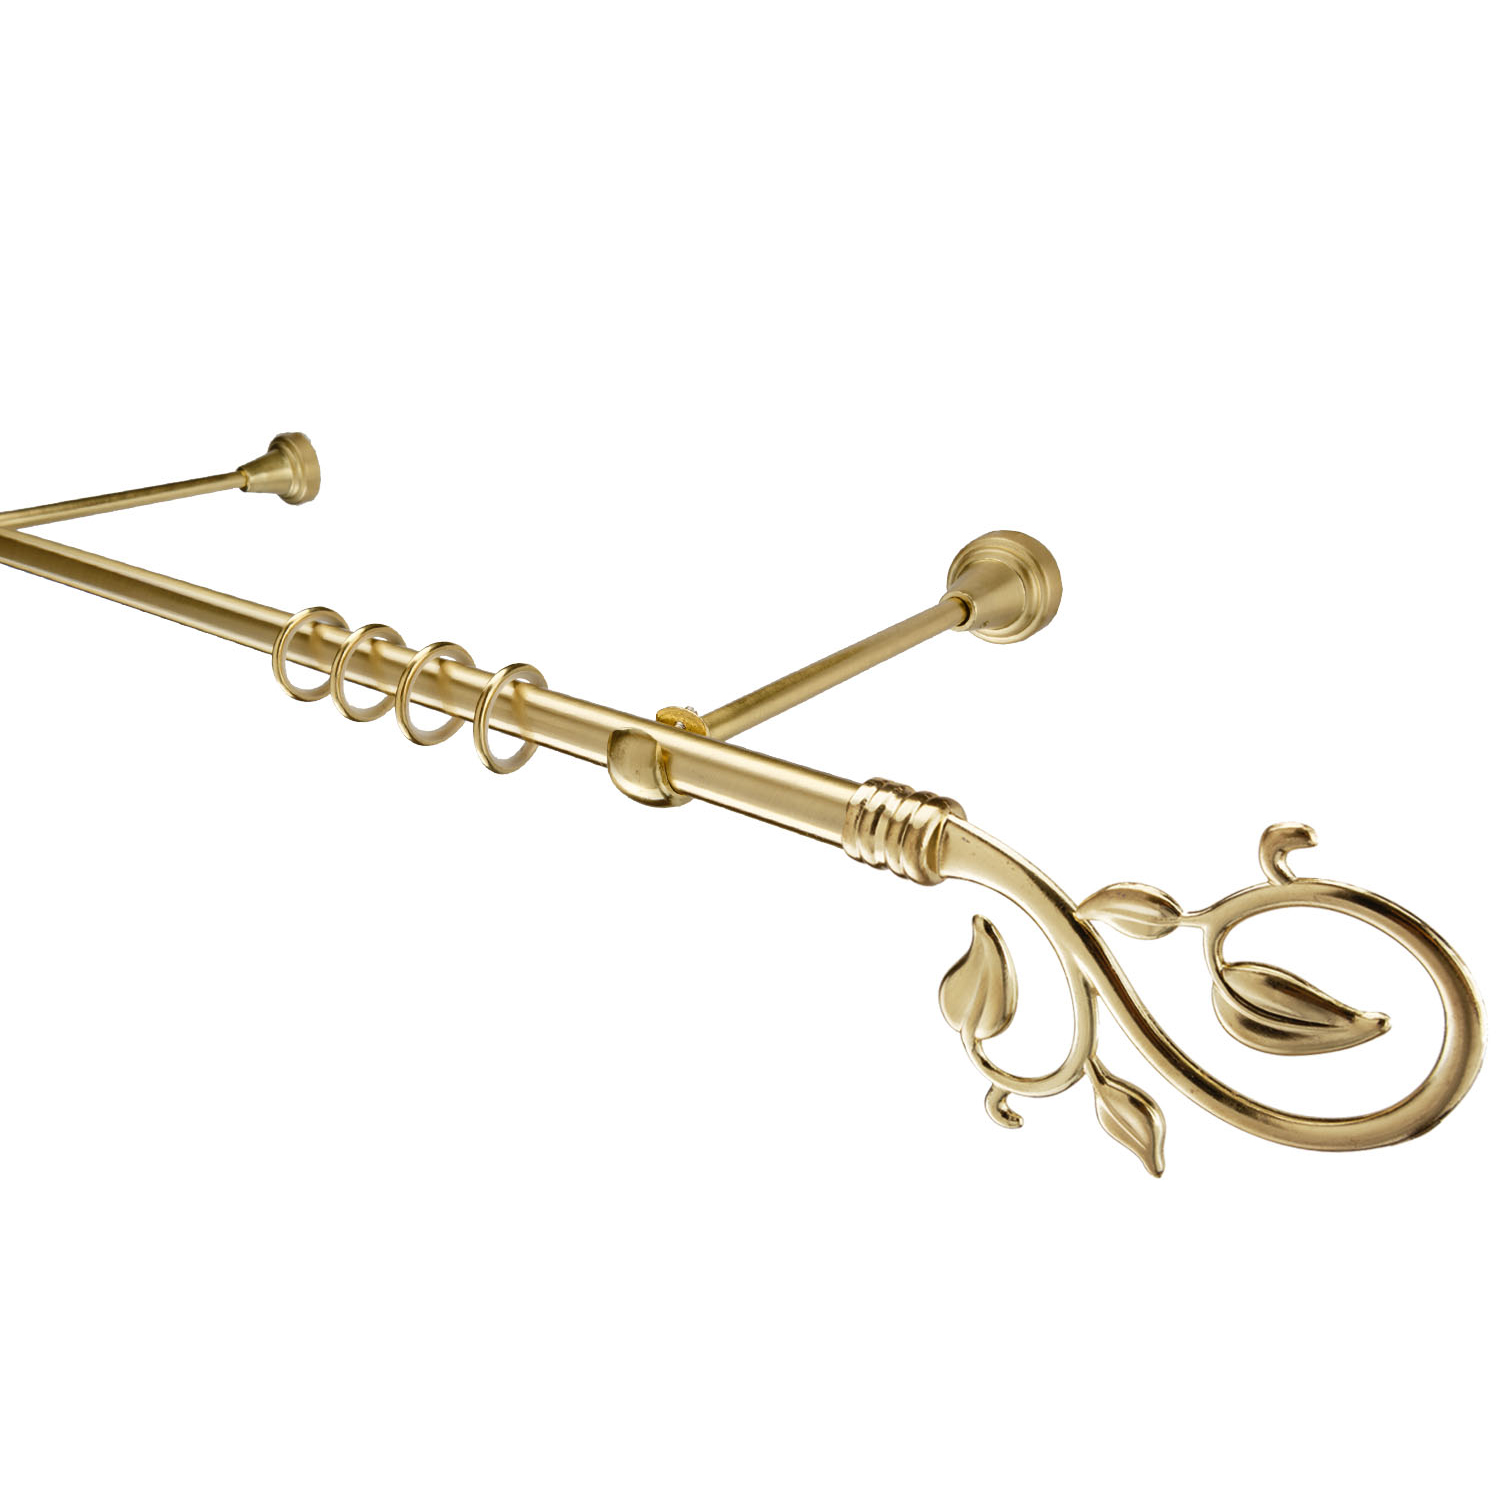 Металлический карниз для штор Амели, однорядный 16 мм, золото, гладкая штанга, длина 160 см